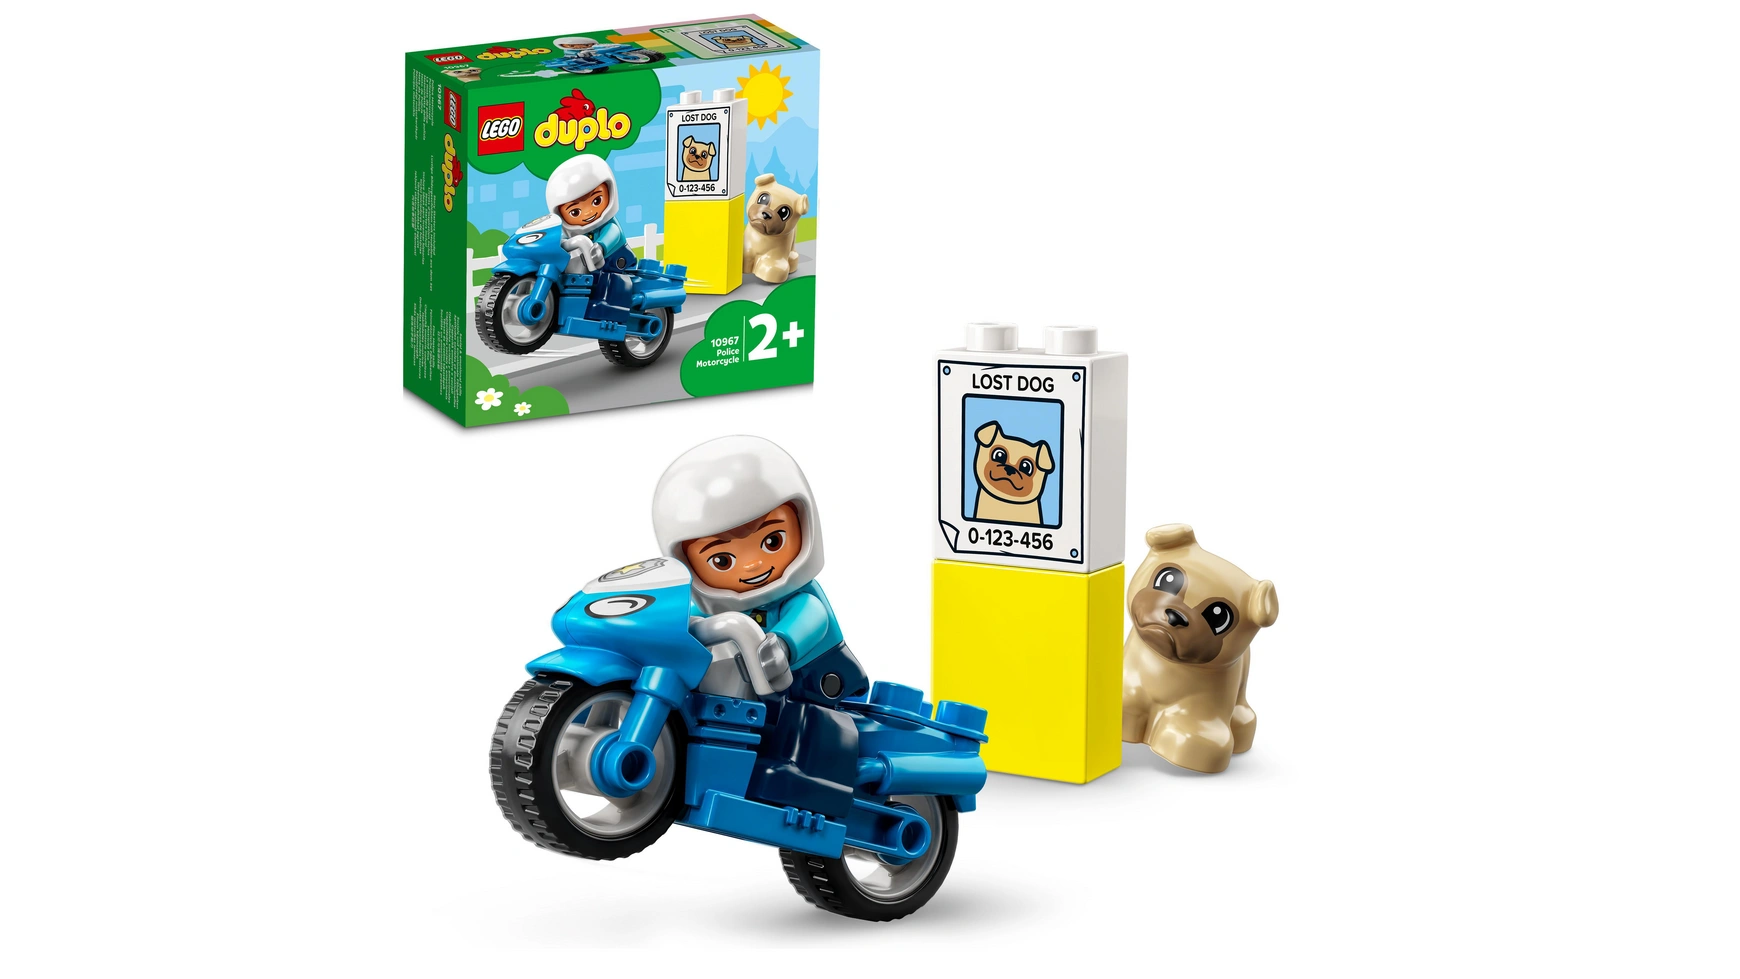 Lego DUPLO Полицейский мотоцикл, игрушка для развития моторики для малышей lego duplo town ветряная турбина и электромобиль развивающая игрушка для детей от 2 лет и старше